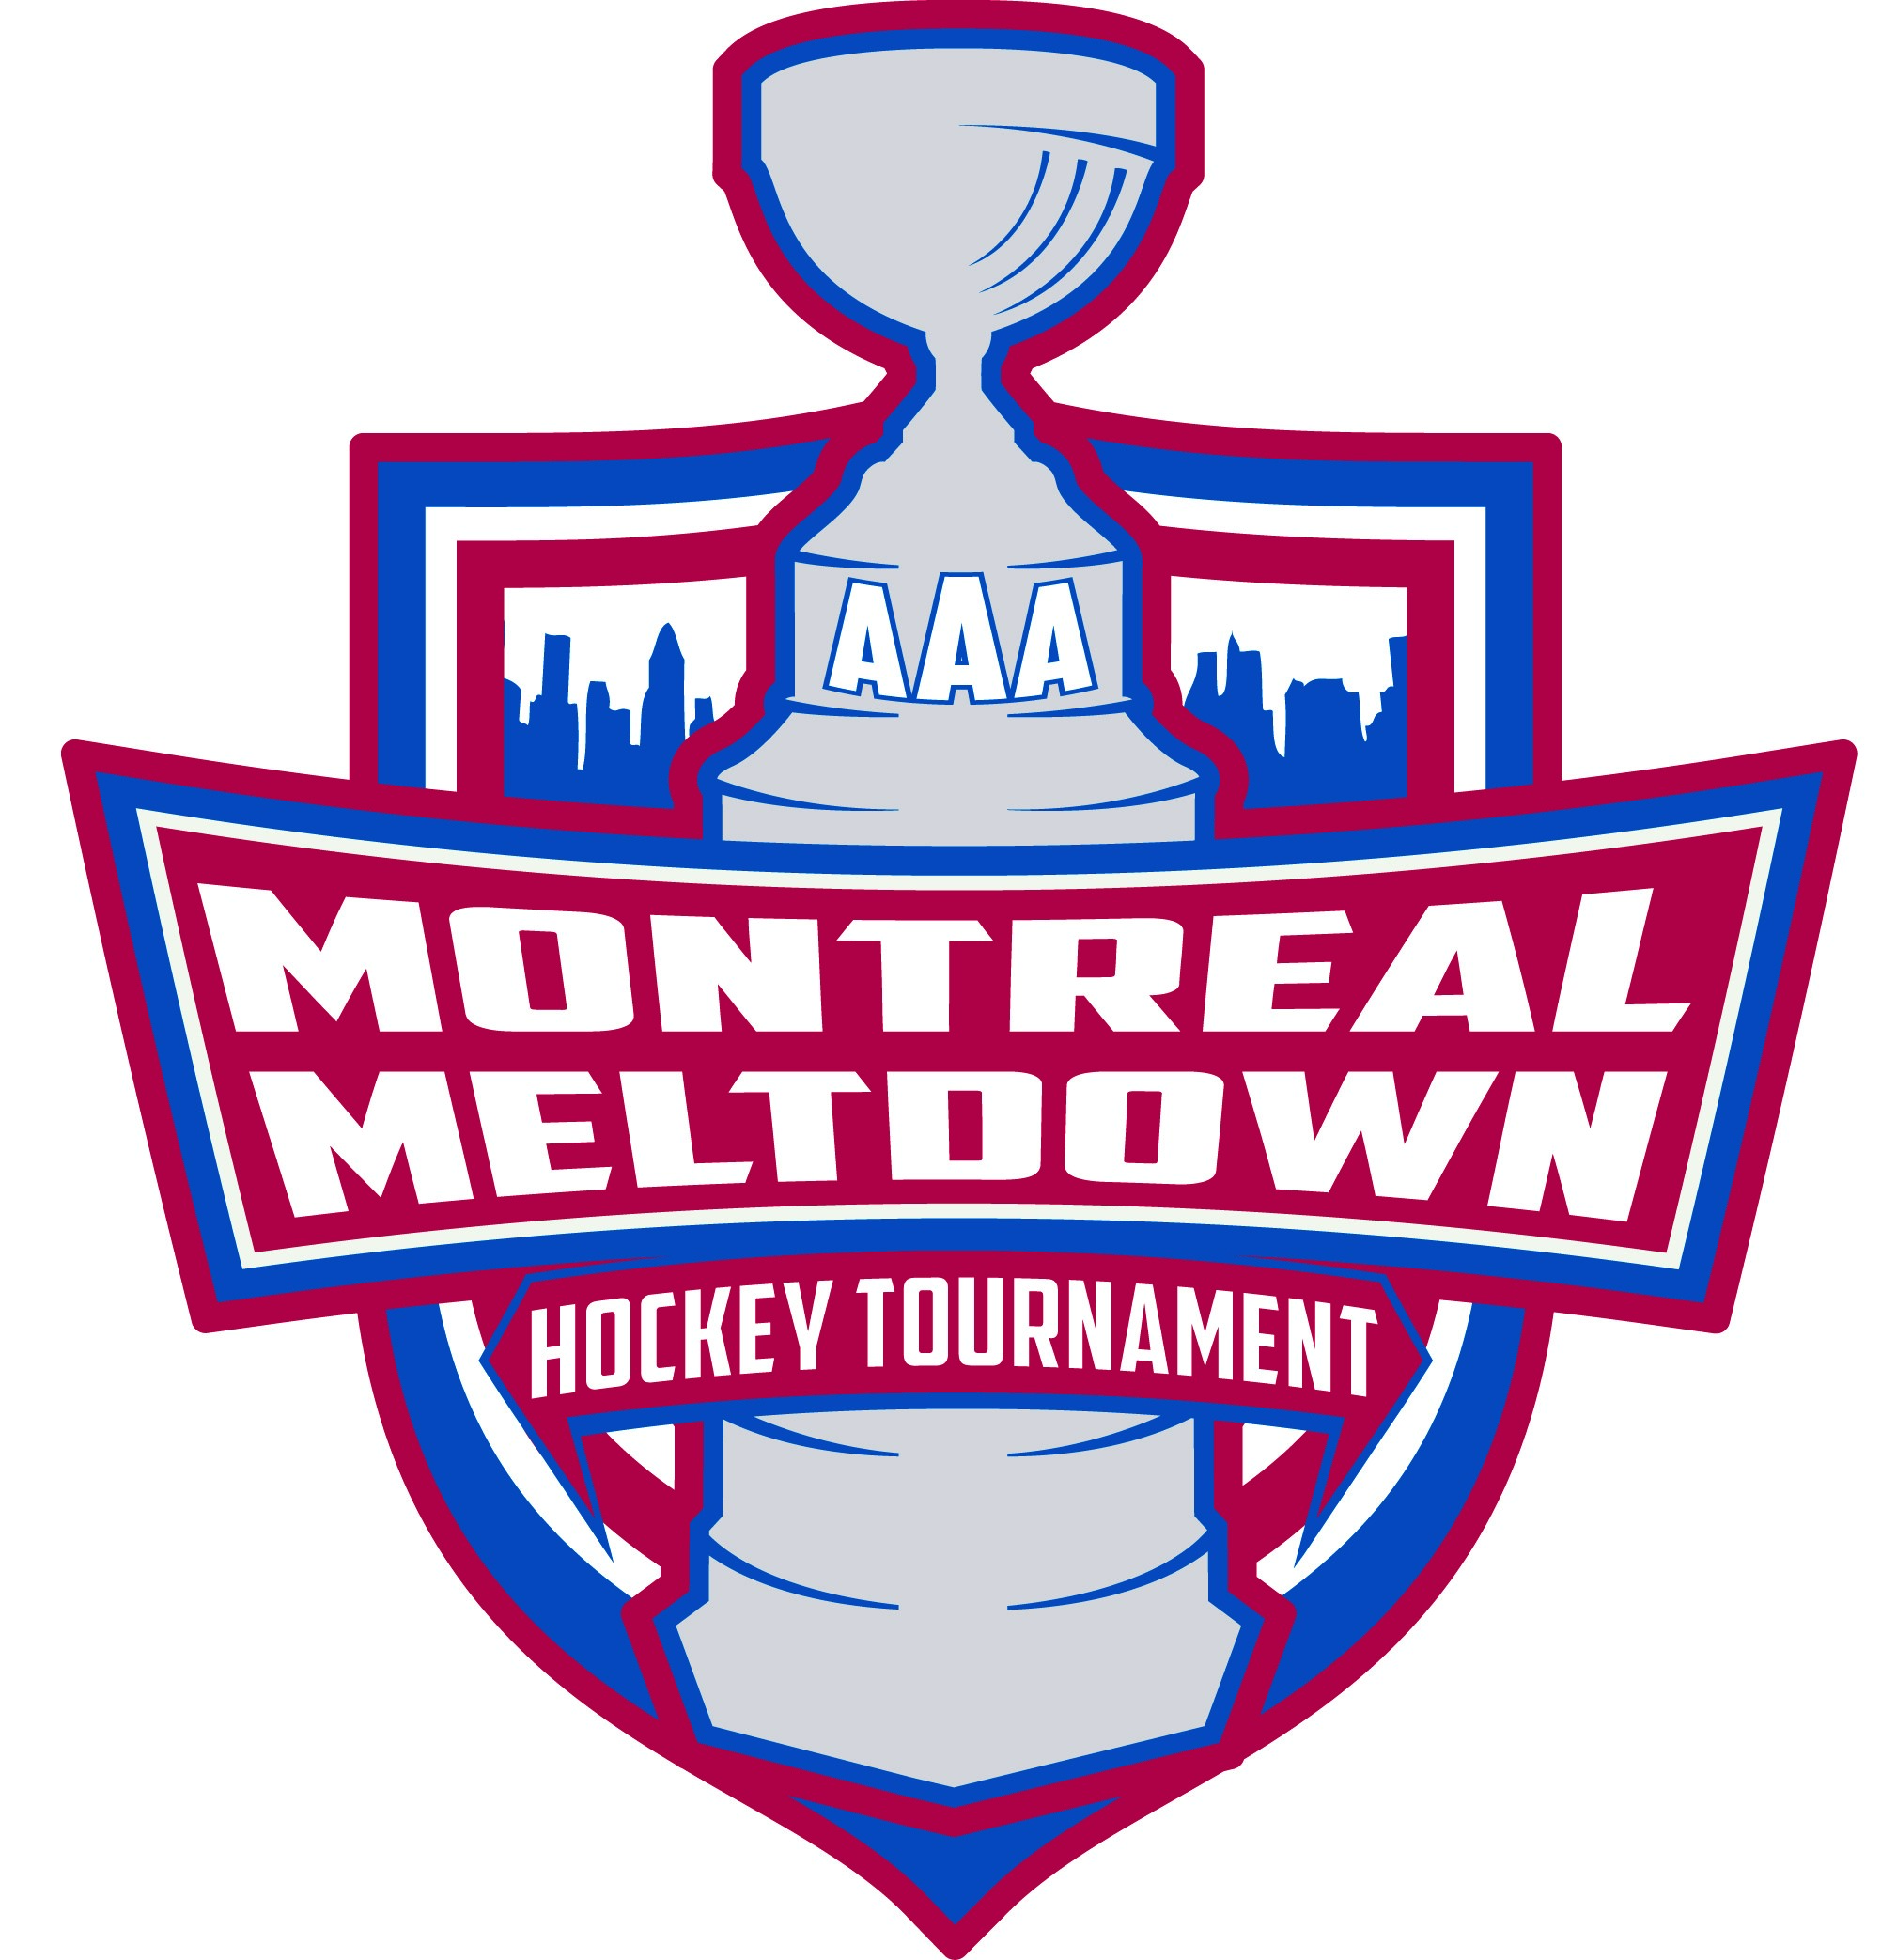 Montreal Meltdown